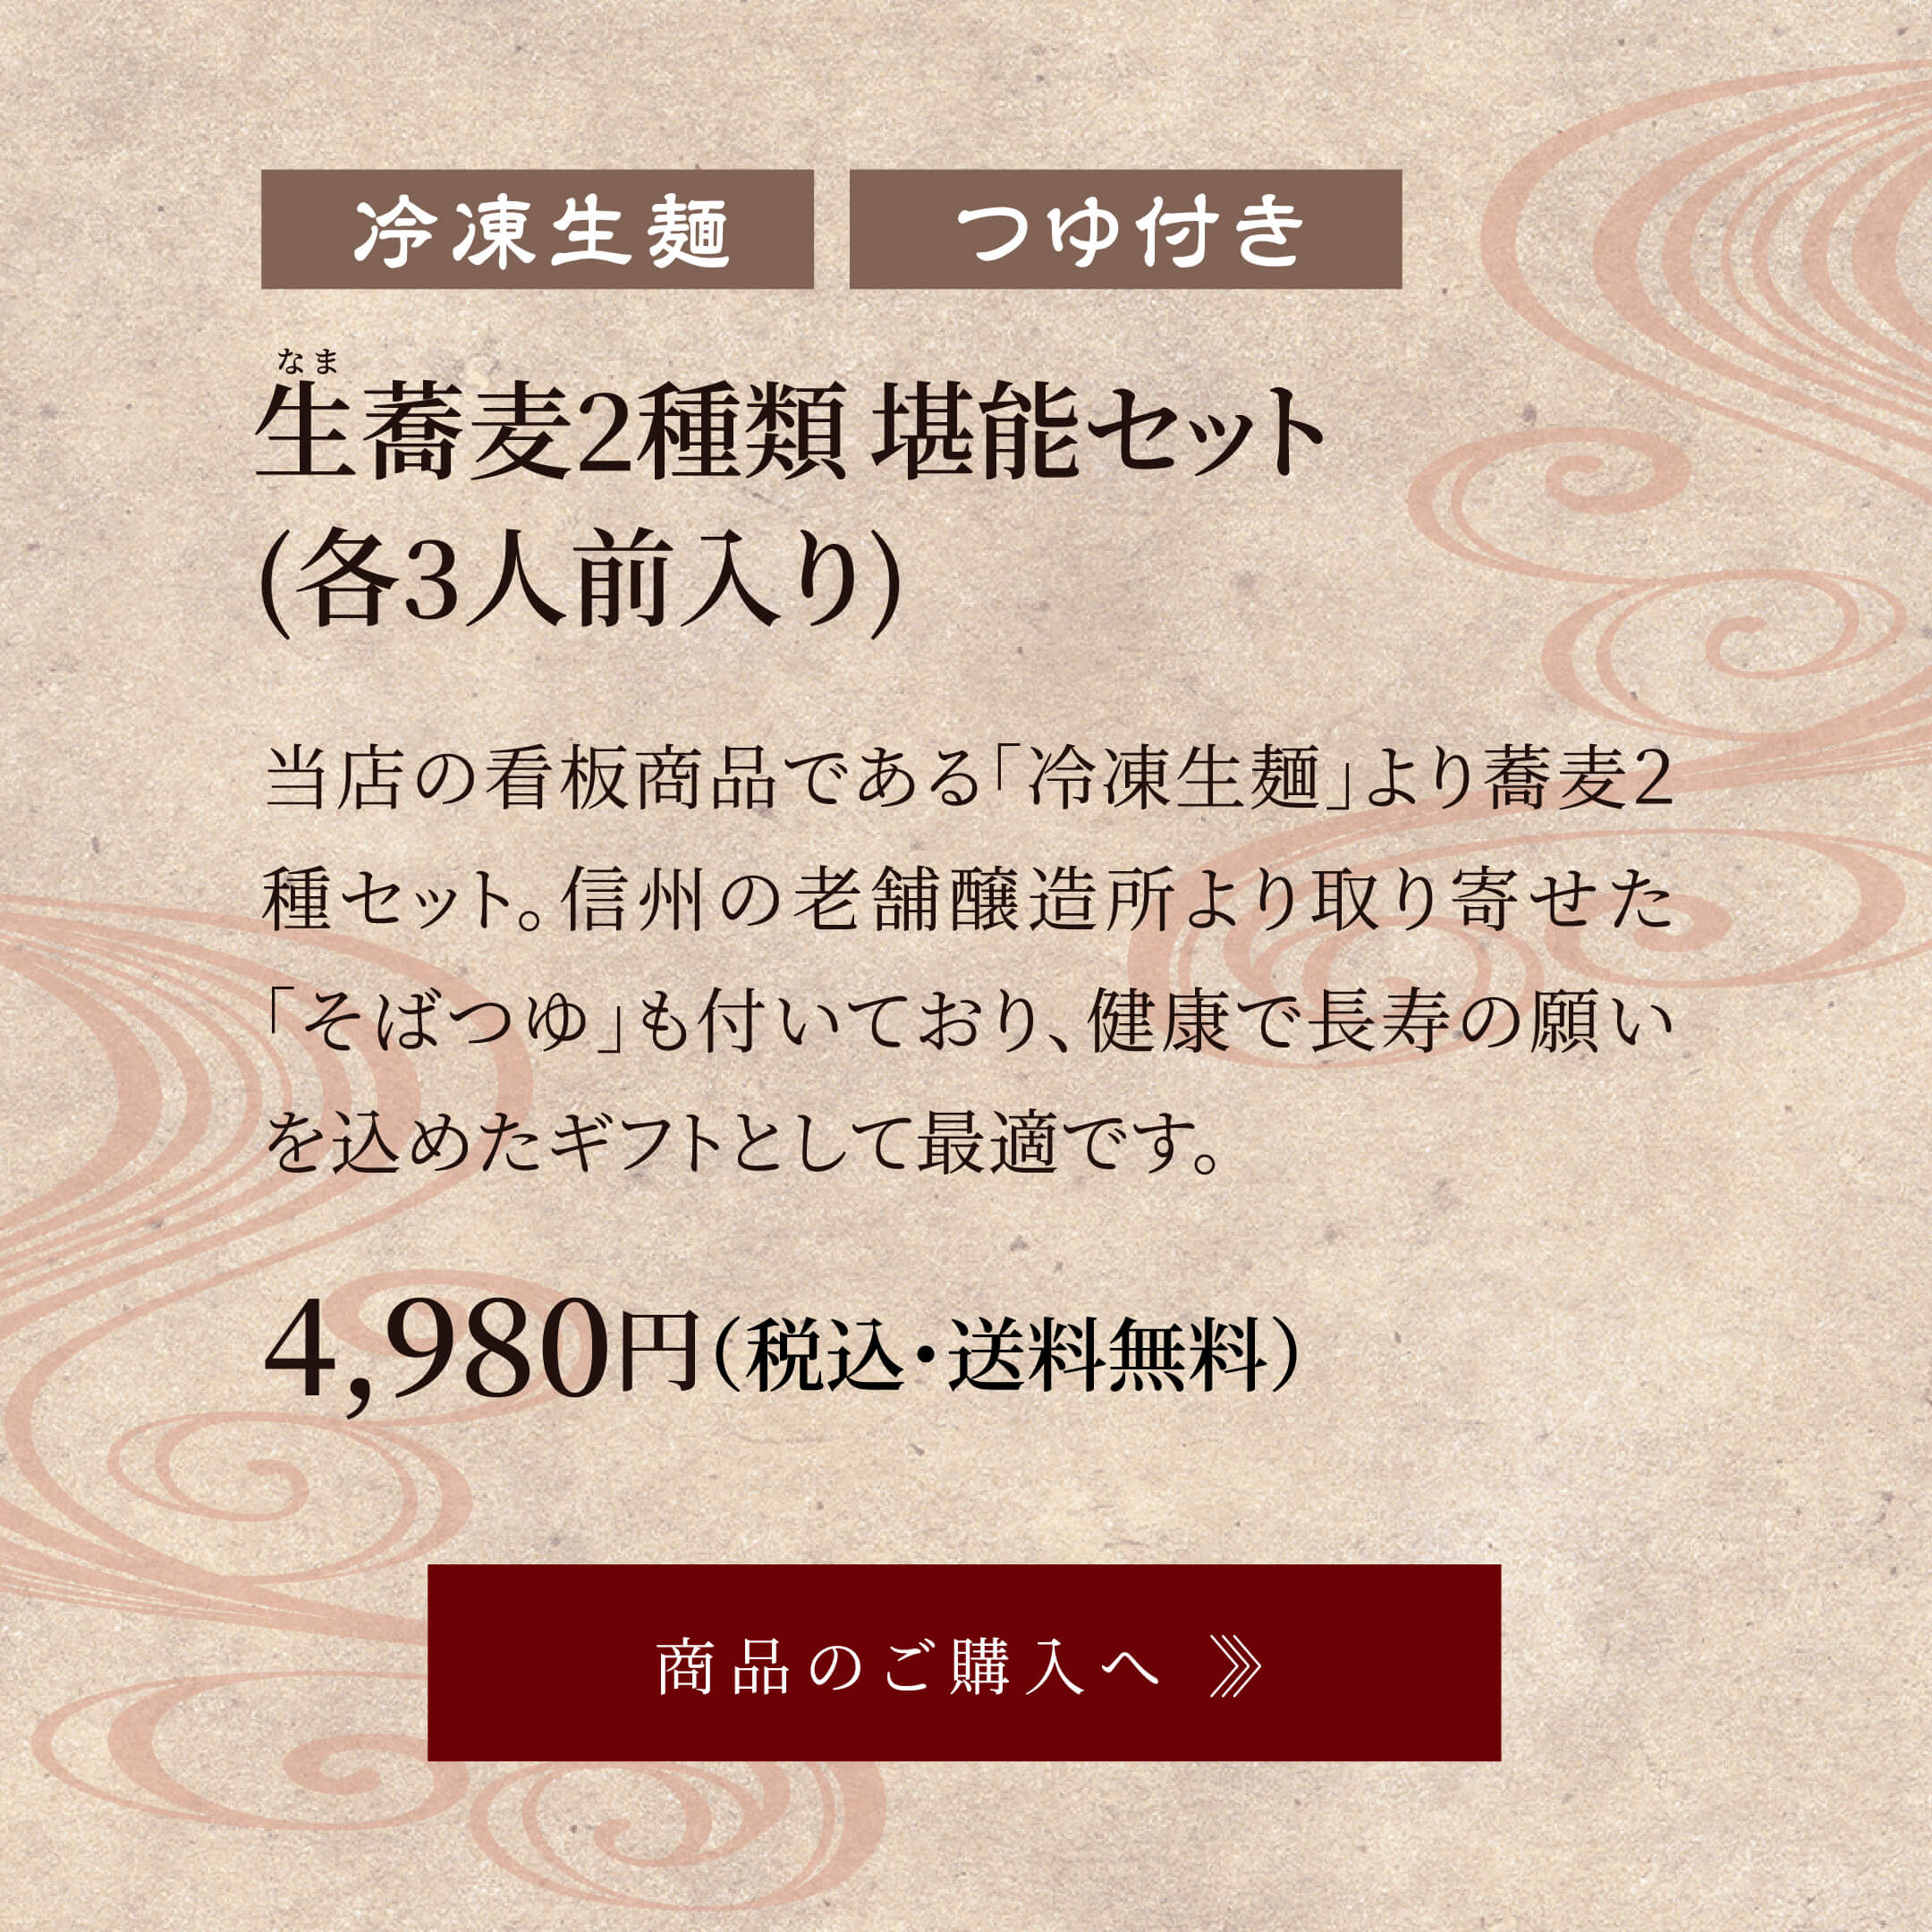 生蕎麦2種類堪能セット(各3人前入り) 4,980円(税込・送料無料)